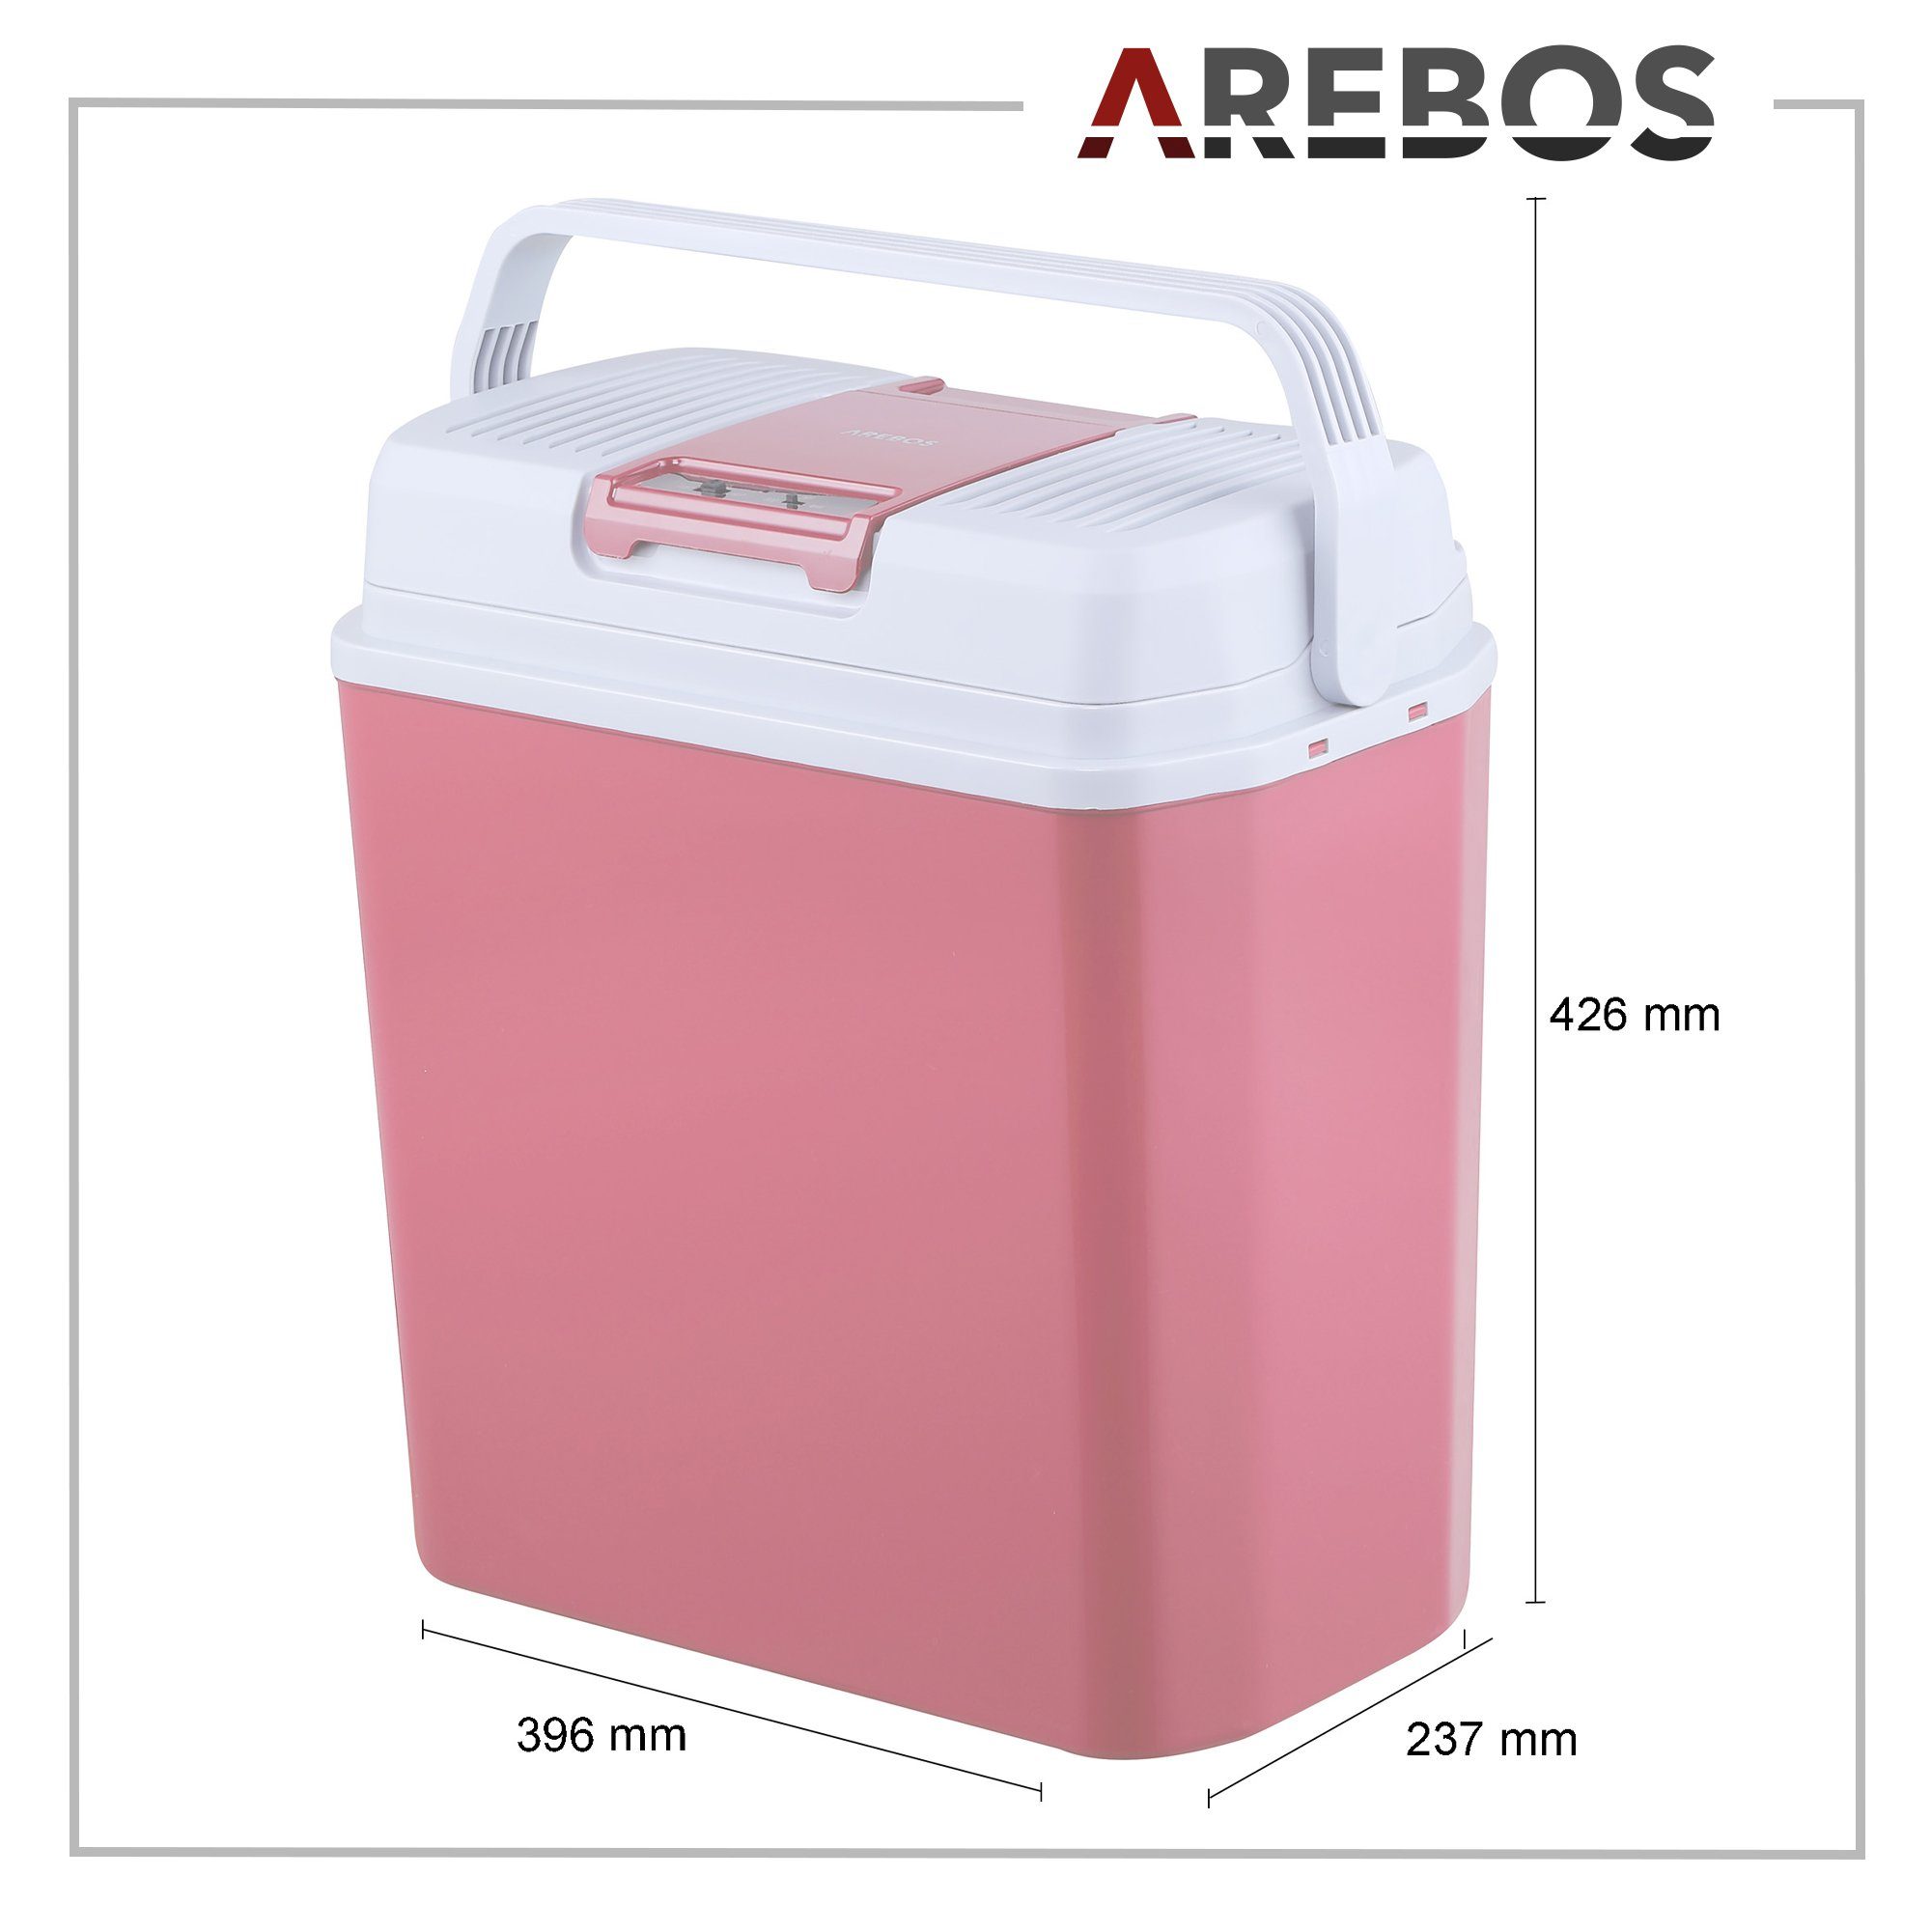 ECO 20 Kühlbox, Modus, Warmhalten, l & Arebos Kühlen Mobil Elektrische Kühlschrank